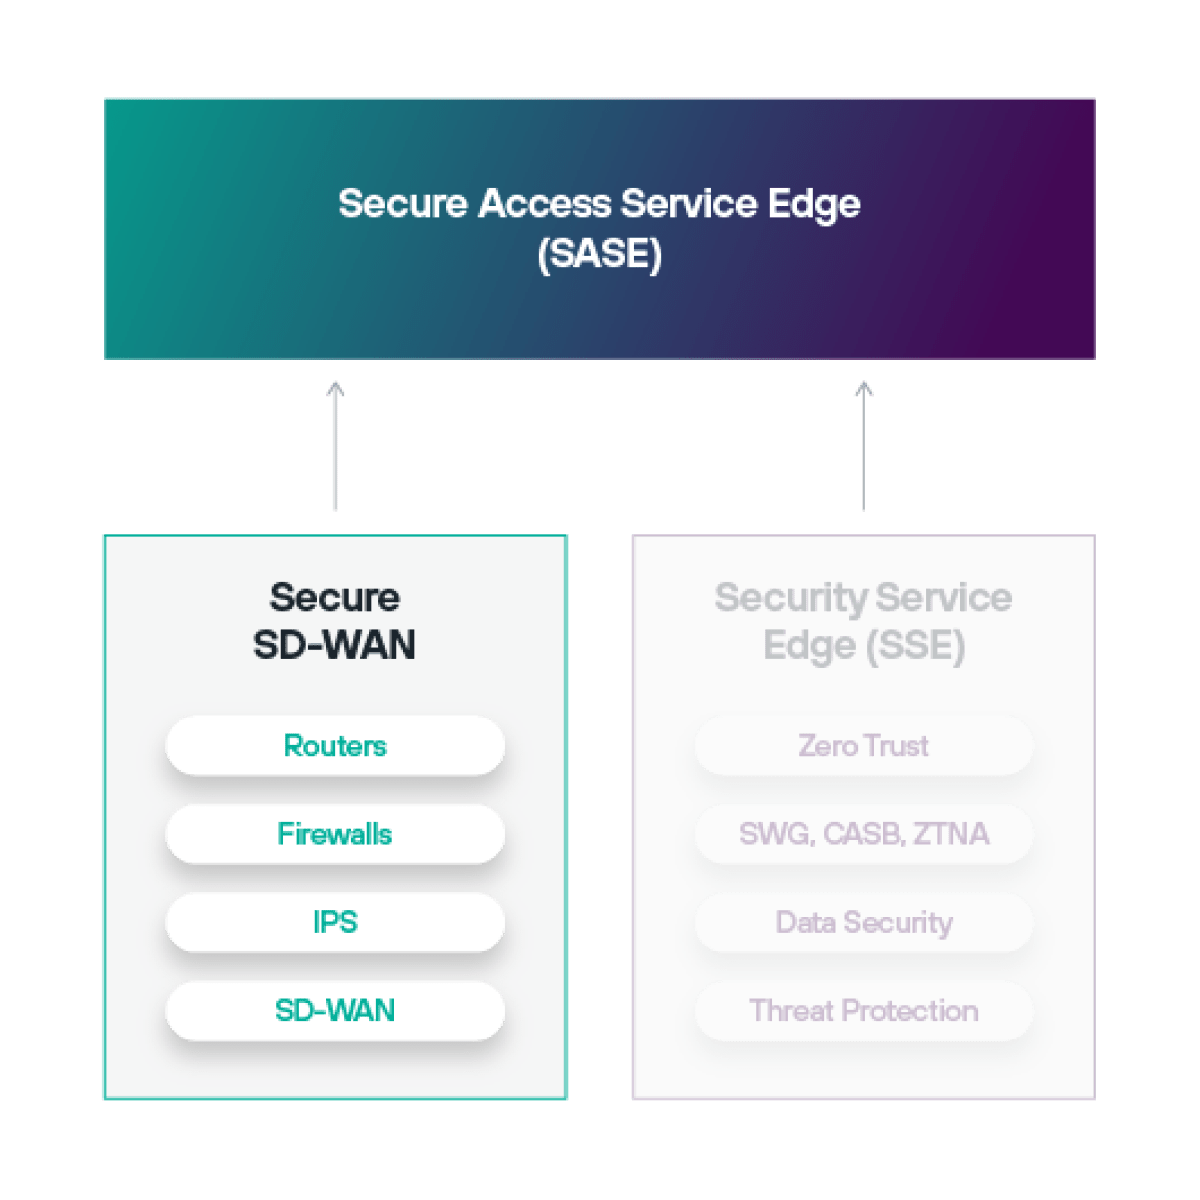 Le software-Defined Wide Area Networking (SD-WAN) fait partie de l'architecture Secure Access Service Edge (SASE).